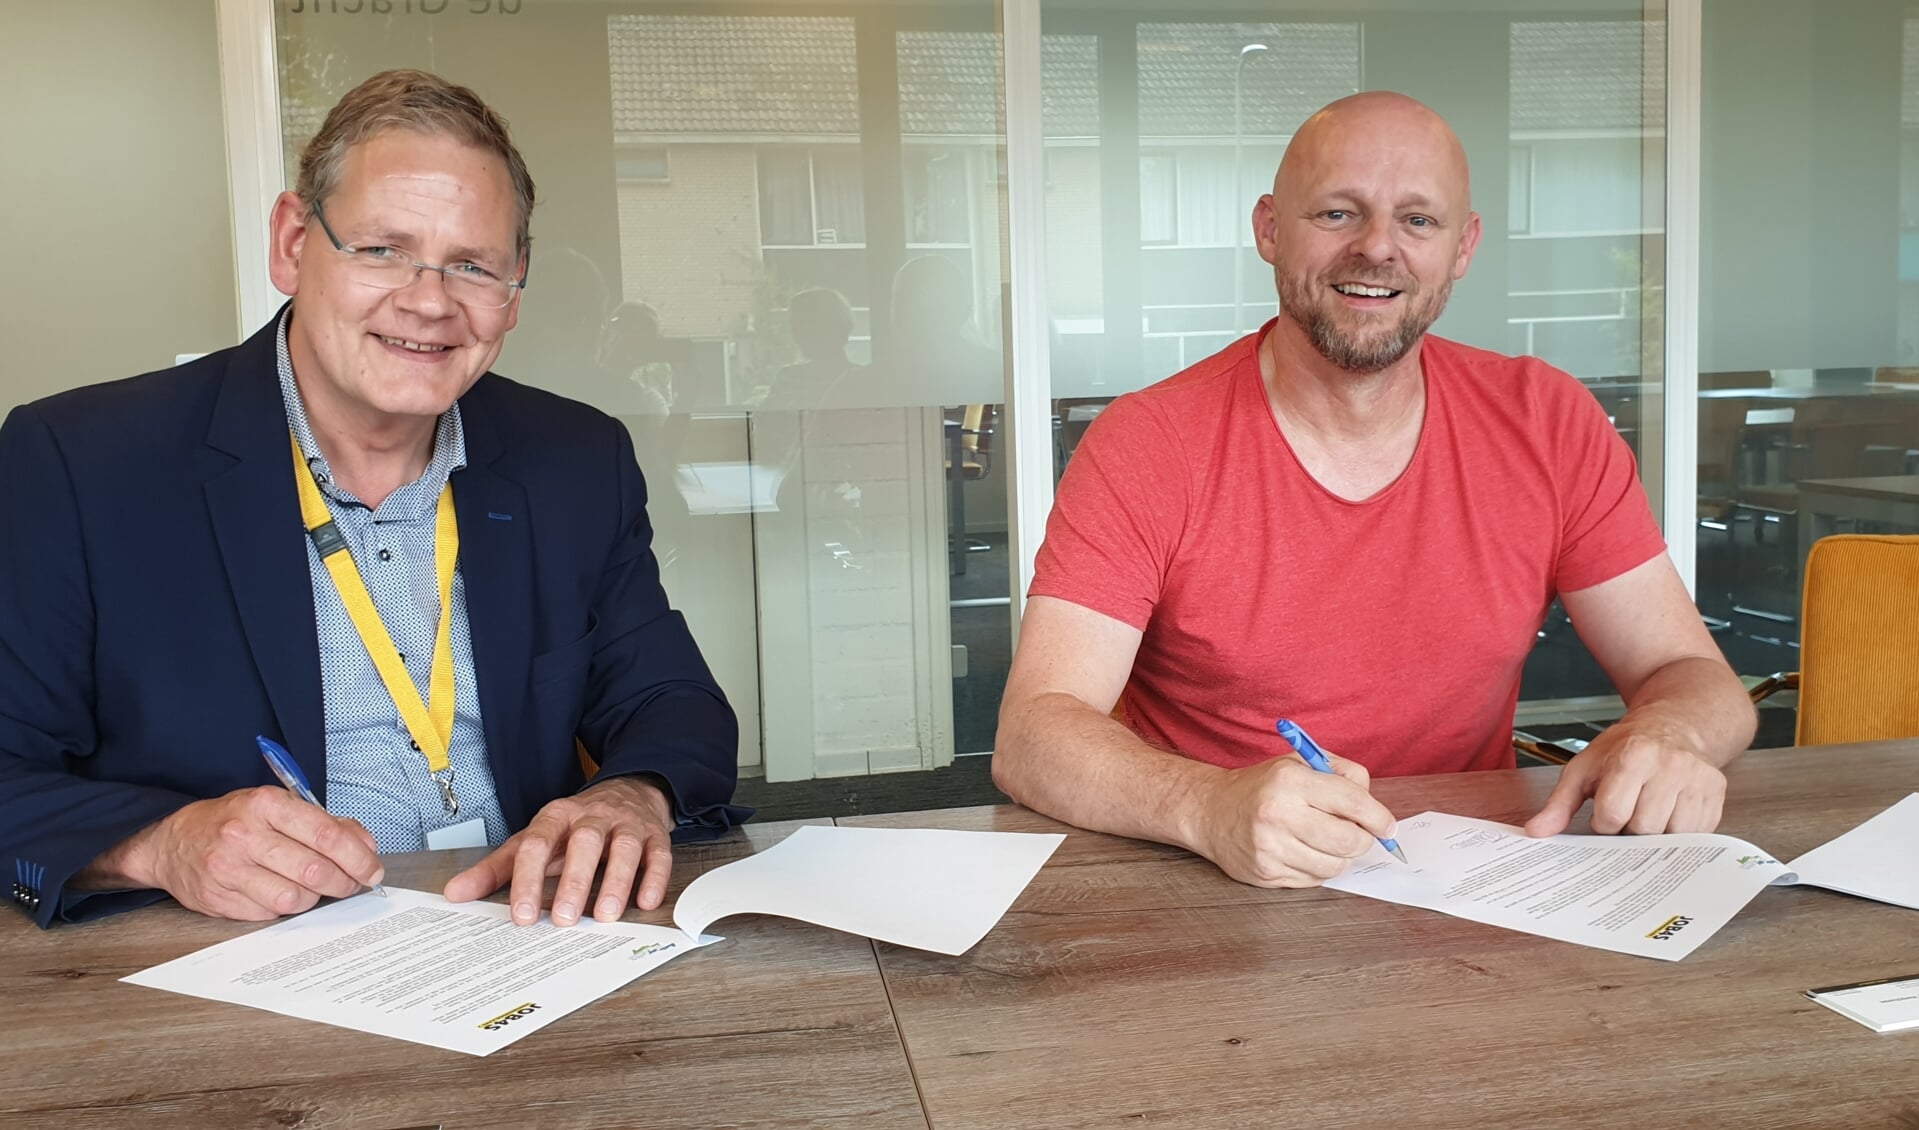 Herman Roord en Eddy Verschuren bekrachtigen de samenwerking met het tekenen van de overeenkomst. Foto: PR